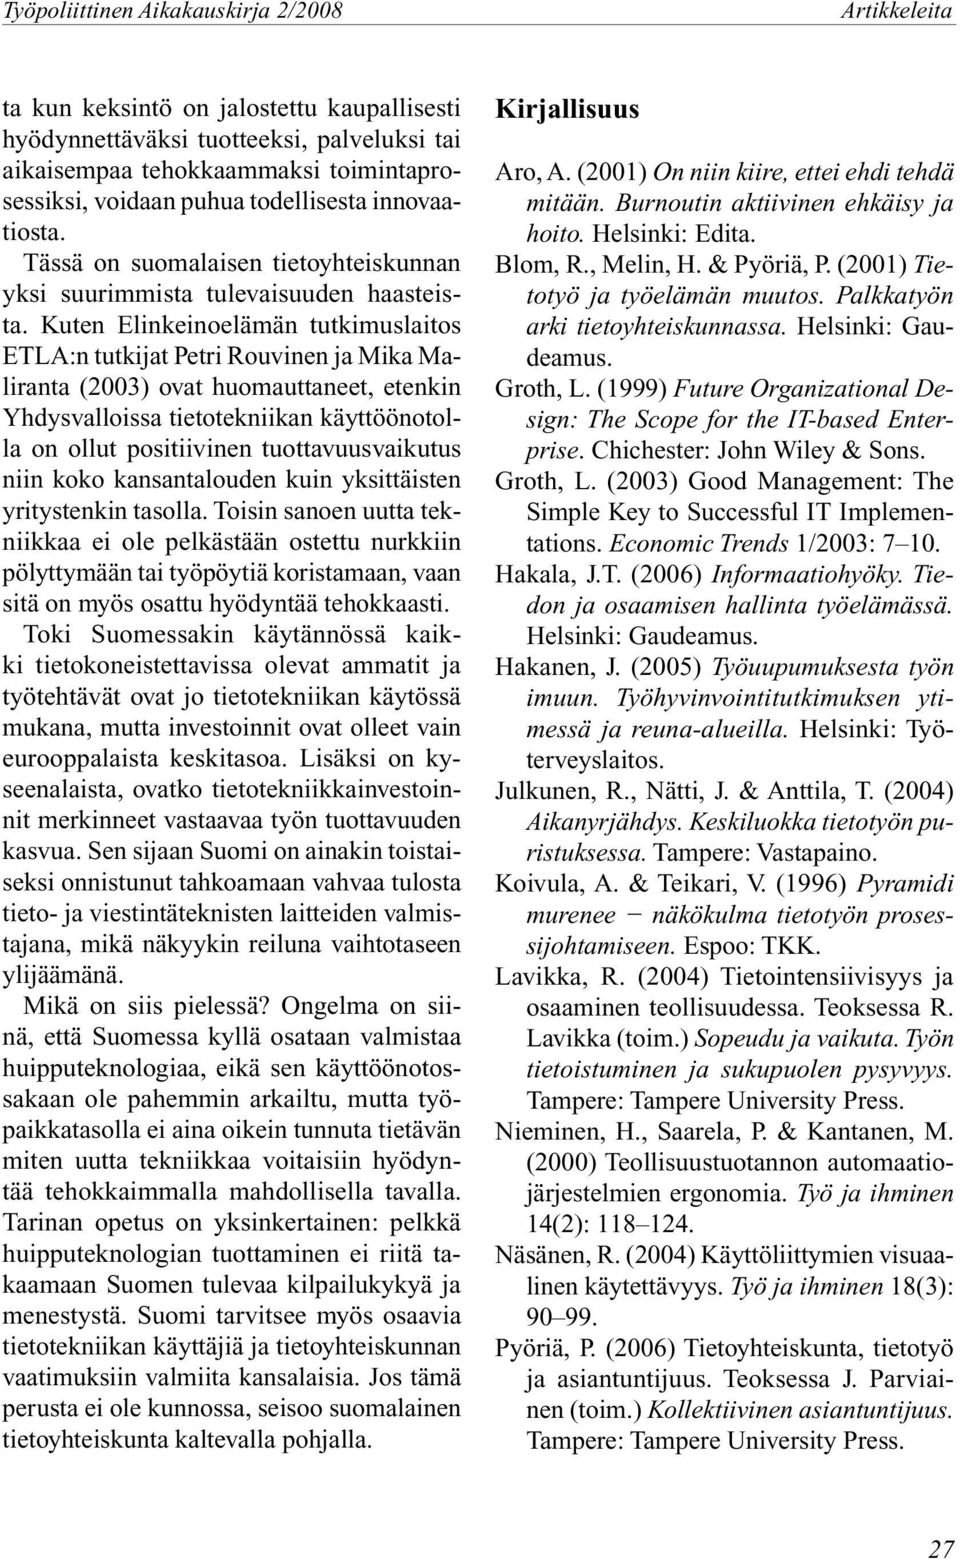 Kuten Elinkeinoelämän tutkimuslaitos ETLA:n tutkijat Petri Rouvinen ja Mika Maliranta (2003) ovat huomauttaneet, etenkin Yhdysvalloissa tietotekniikan käyttöönotolla on ollut positiivinen